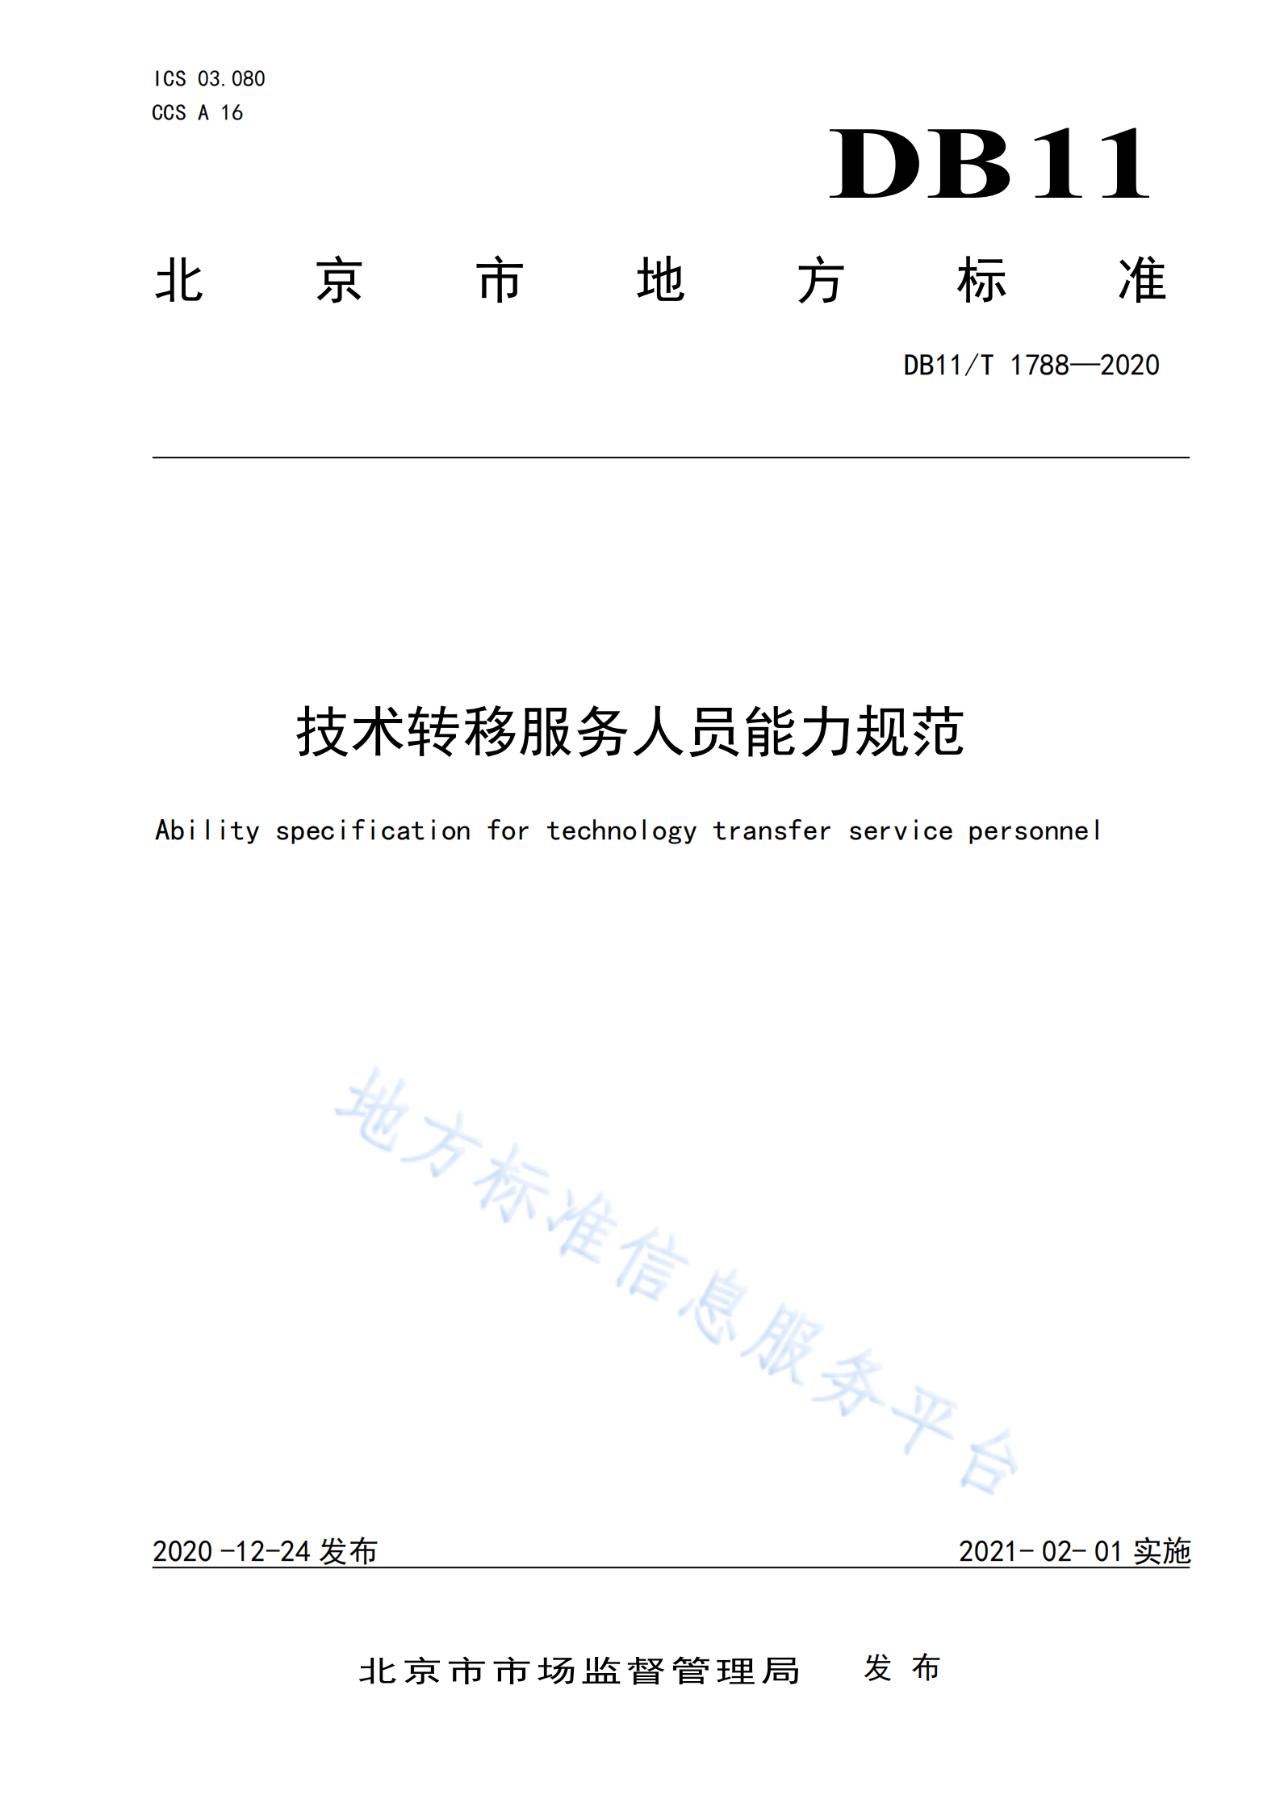 北京发布全国首个技术转移服务人员能力建设地方标准！（附：全文）